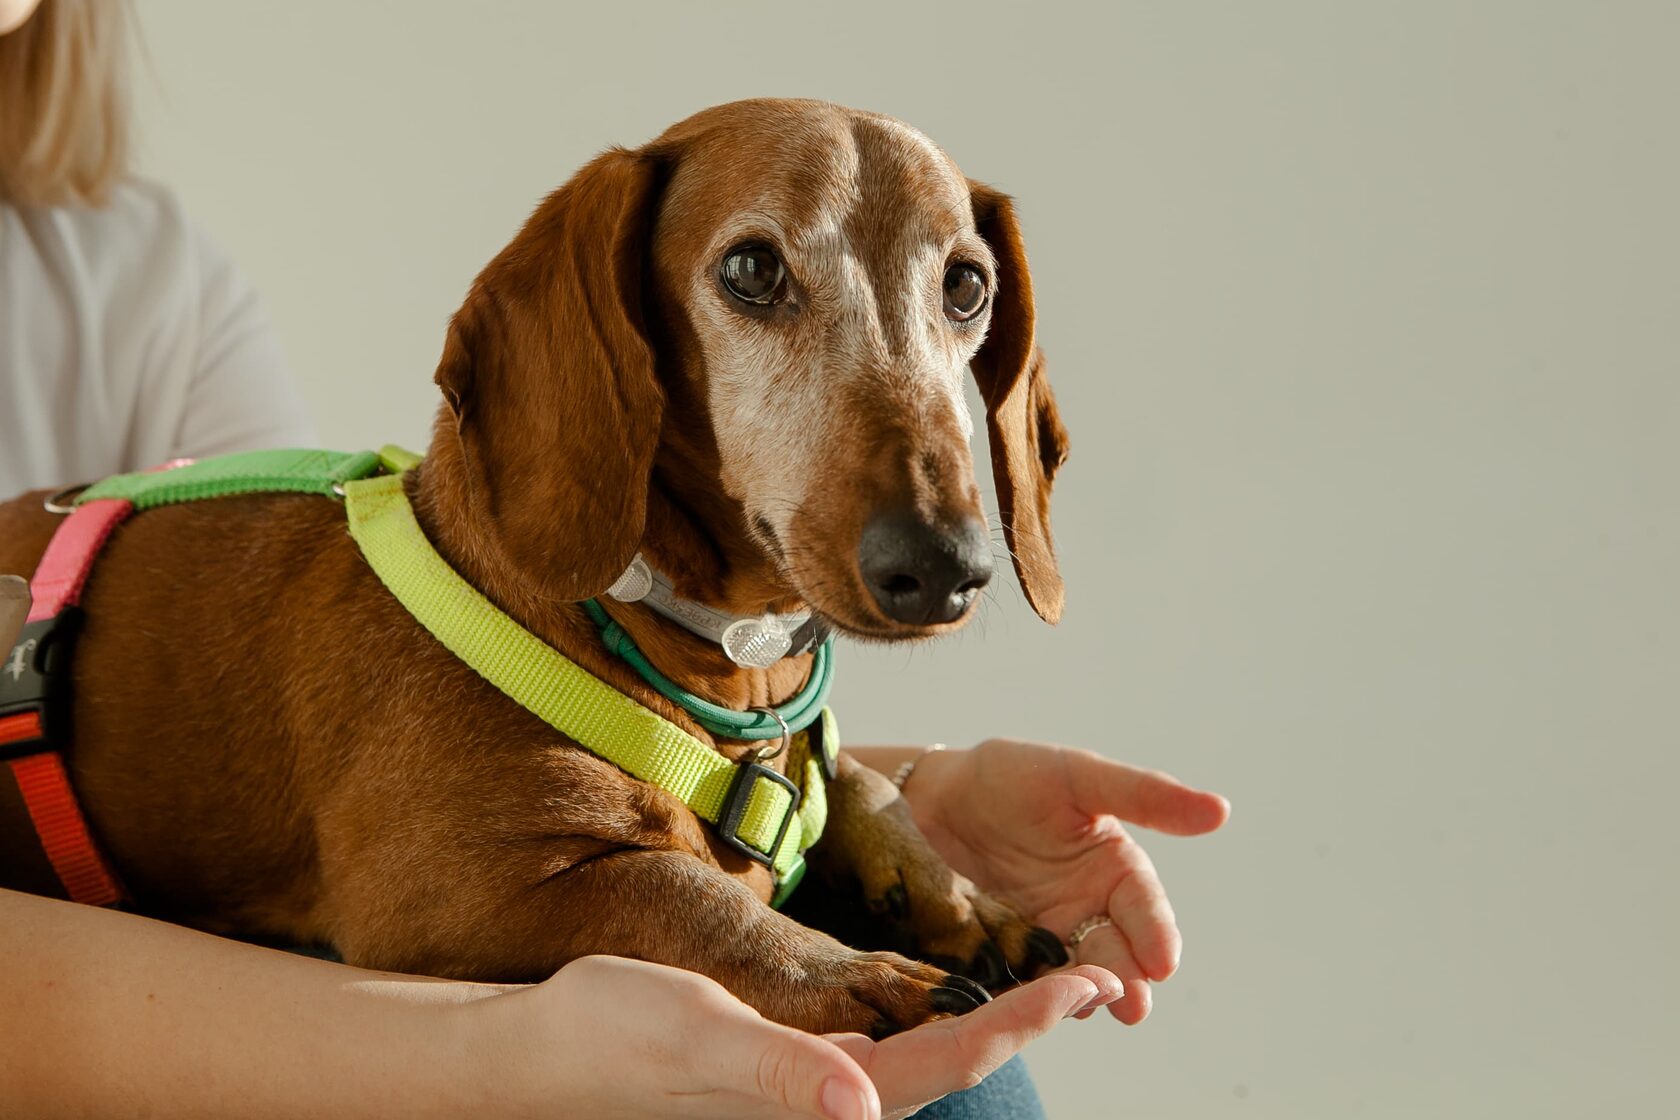 Дрессировка собак в домашних условиях: с чего начинать и главные правила | Royal Canin UA